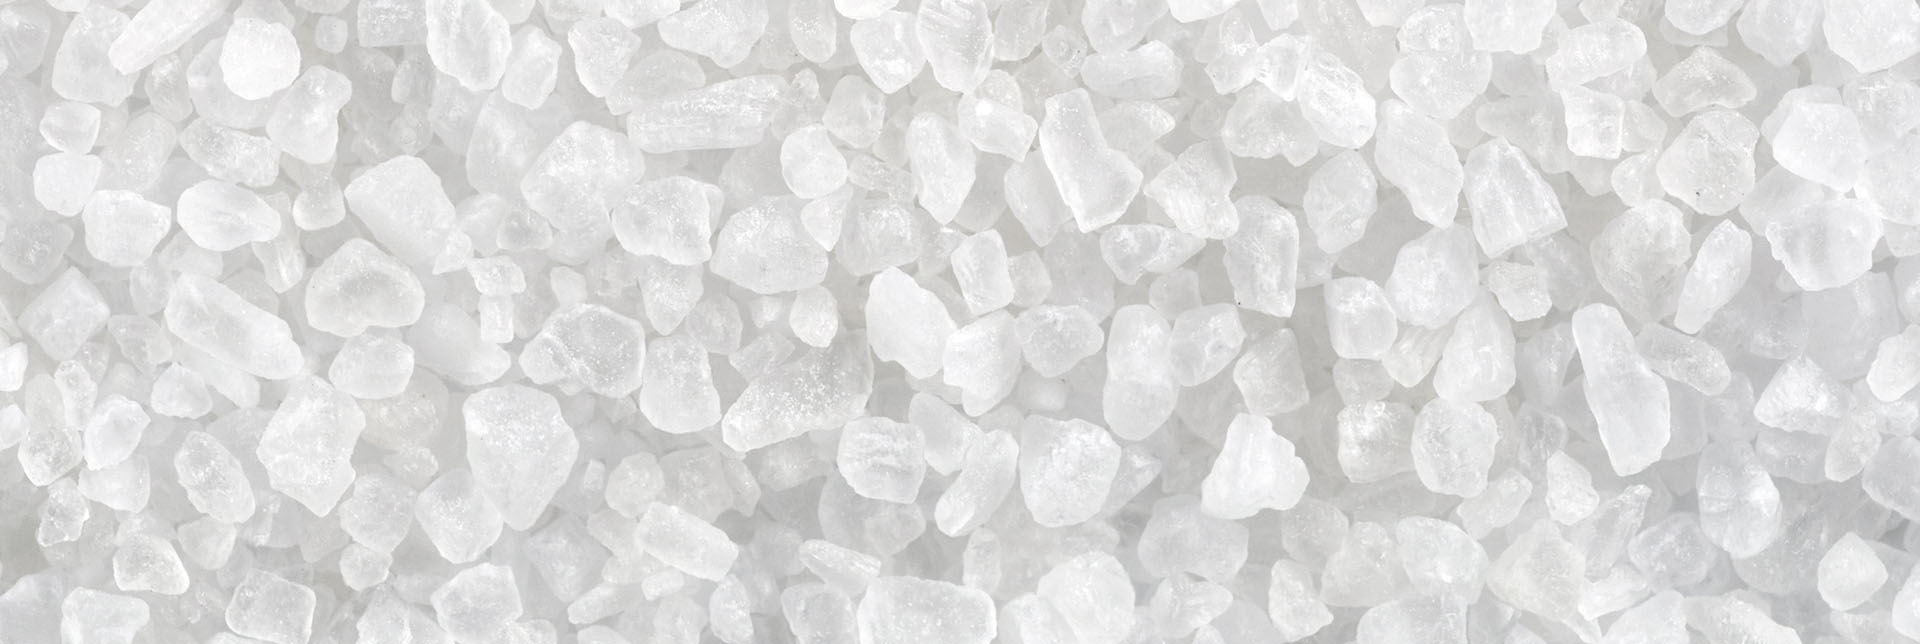 ¿Cómo es el proceso de la elaboración de sal?